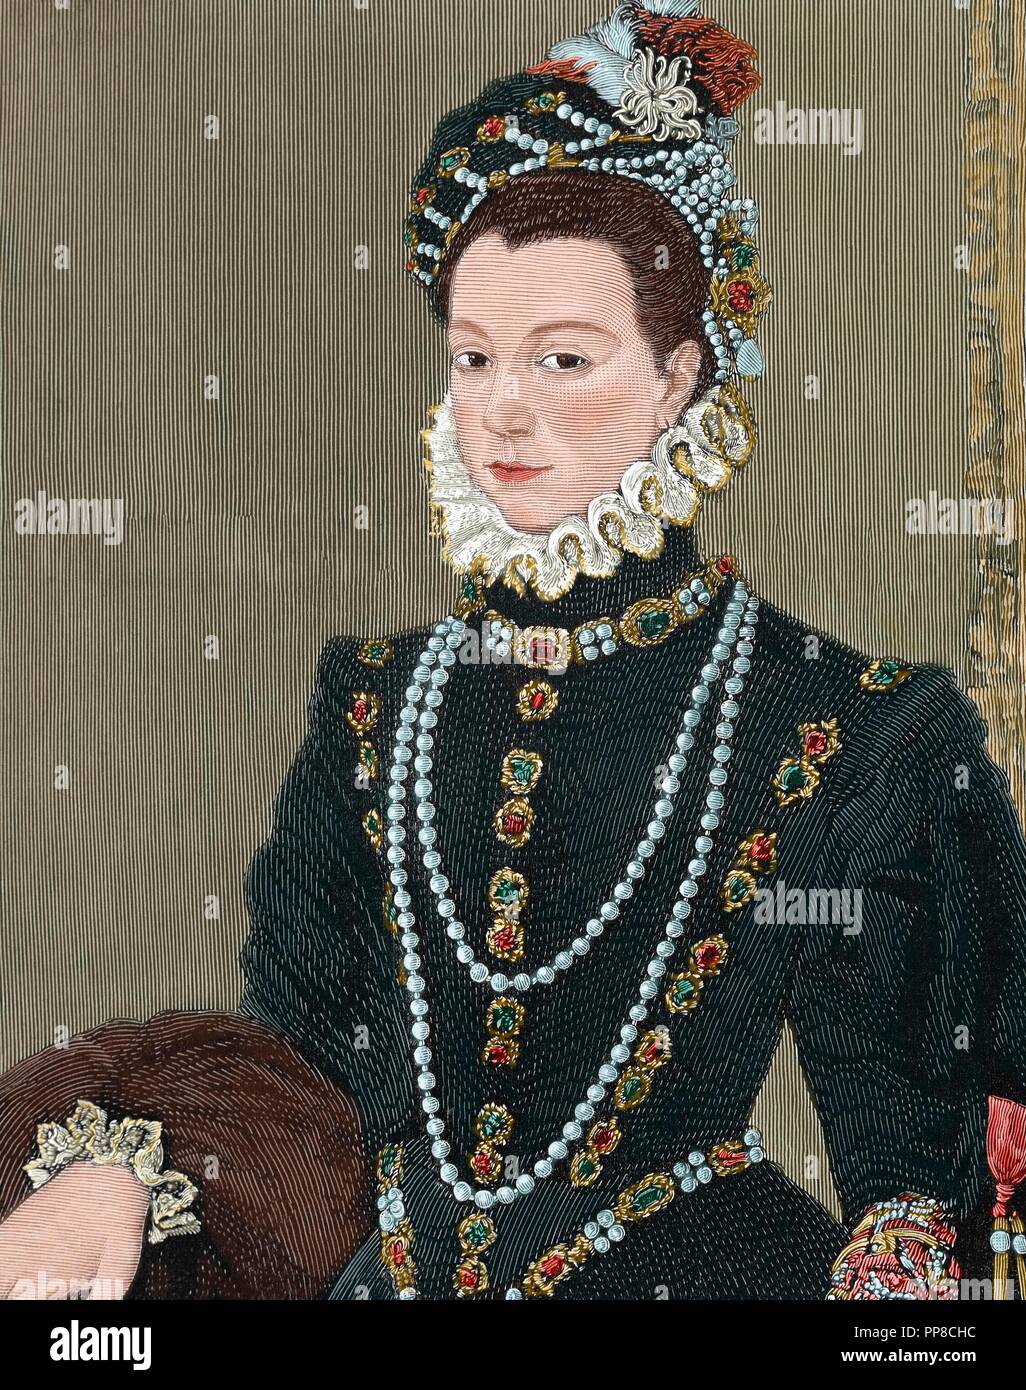 Elisabetta di Valois (1545-1568). Regina spagnola consorte. La Figlia di Enrico II di Francia e Caterina de' Medici. La terza moglie del re Filippo II di Spagna. Ritratto. Incisione. Colorati. Foto Stock